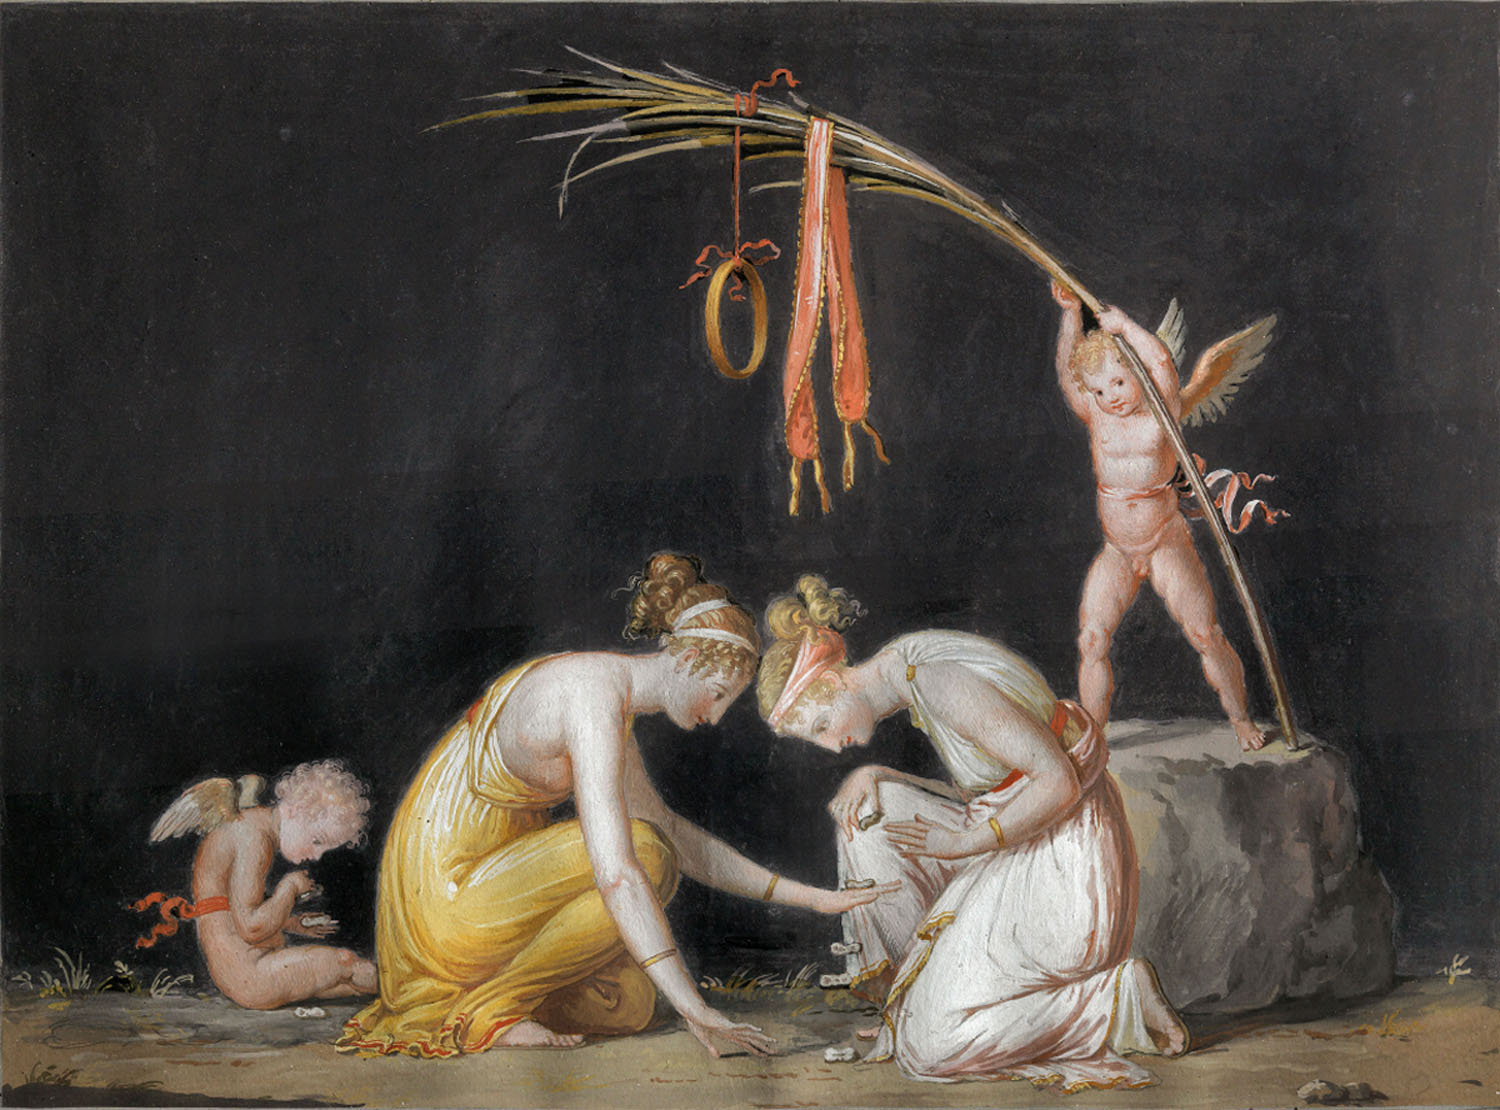 Giocatrici di astragali – A. Canova 1799 - MANN di Napoli, mostra “Canova e l’antico” 2019